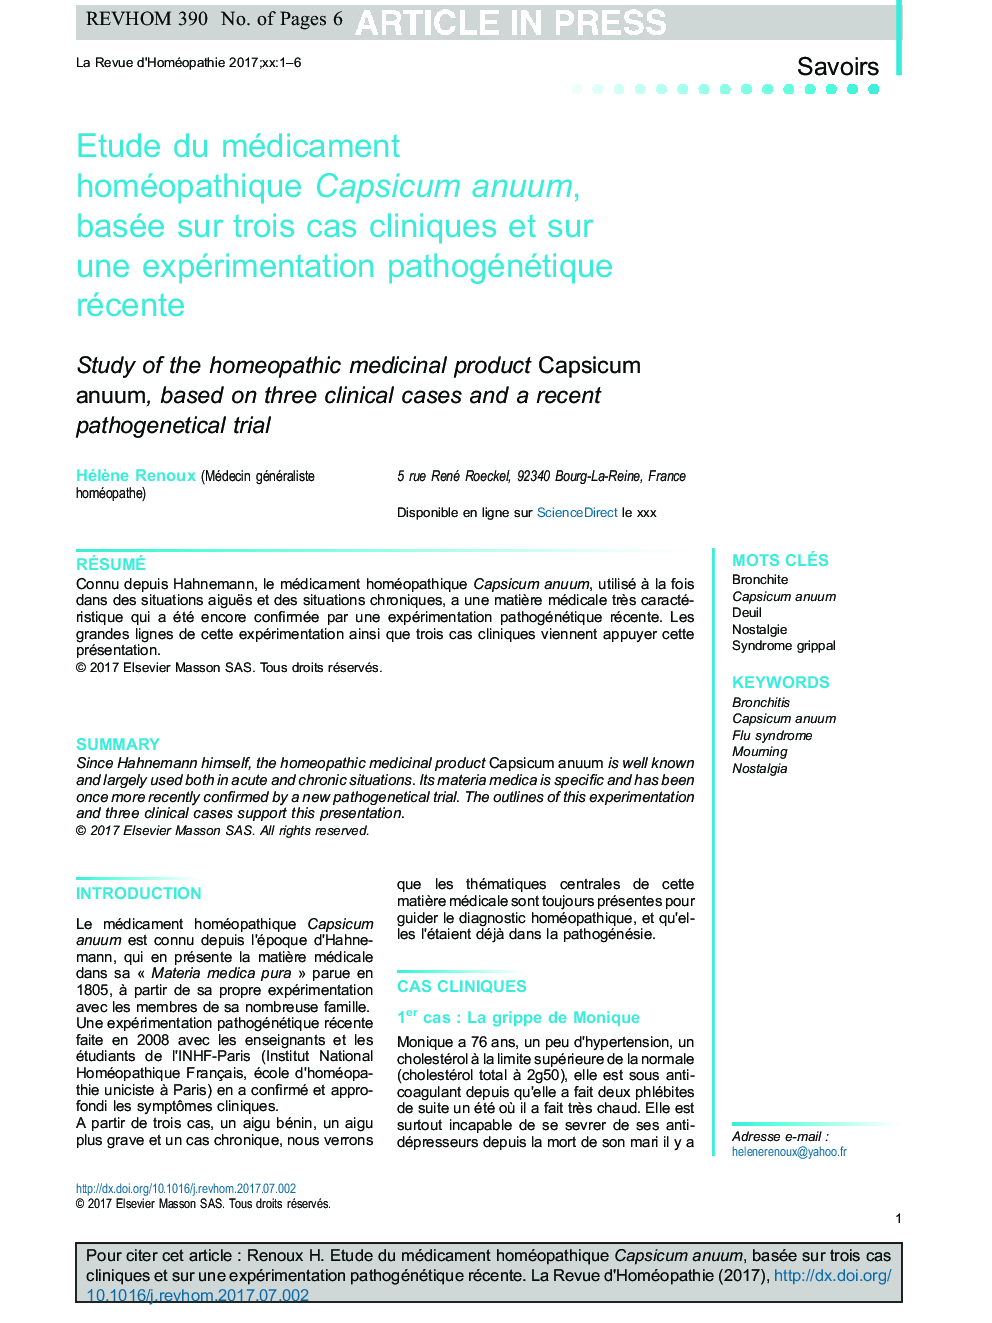 Etude du médicament homéopathique Capsicum anuum, basée sur trois cas cliniques et sur une expérimentation pathogénétique récente